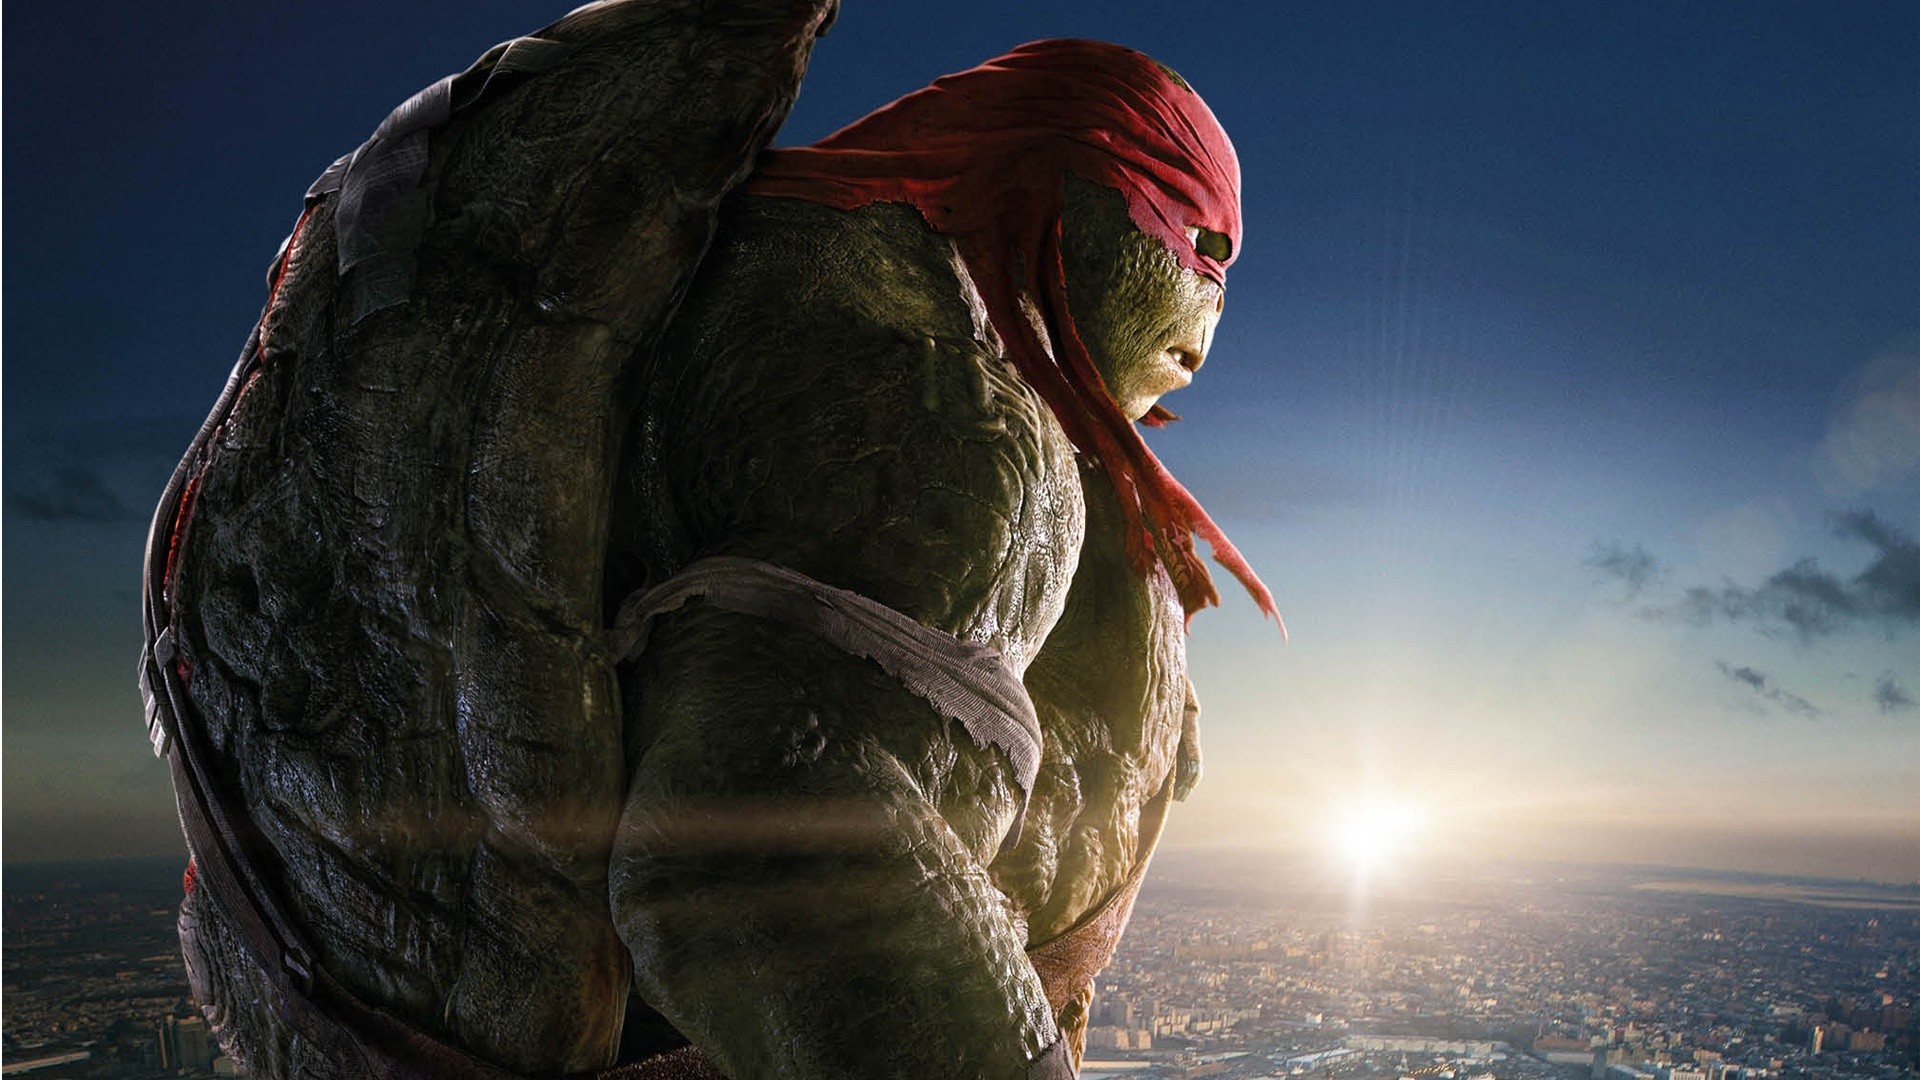 Teenage Mutant Ninja Turtles, Raphael Wallpaper